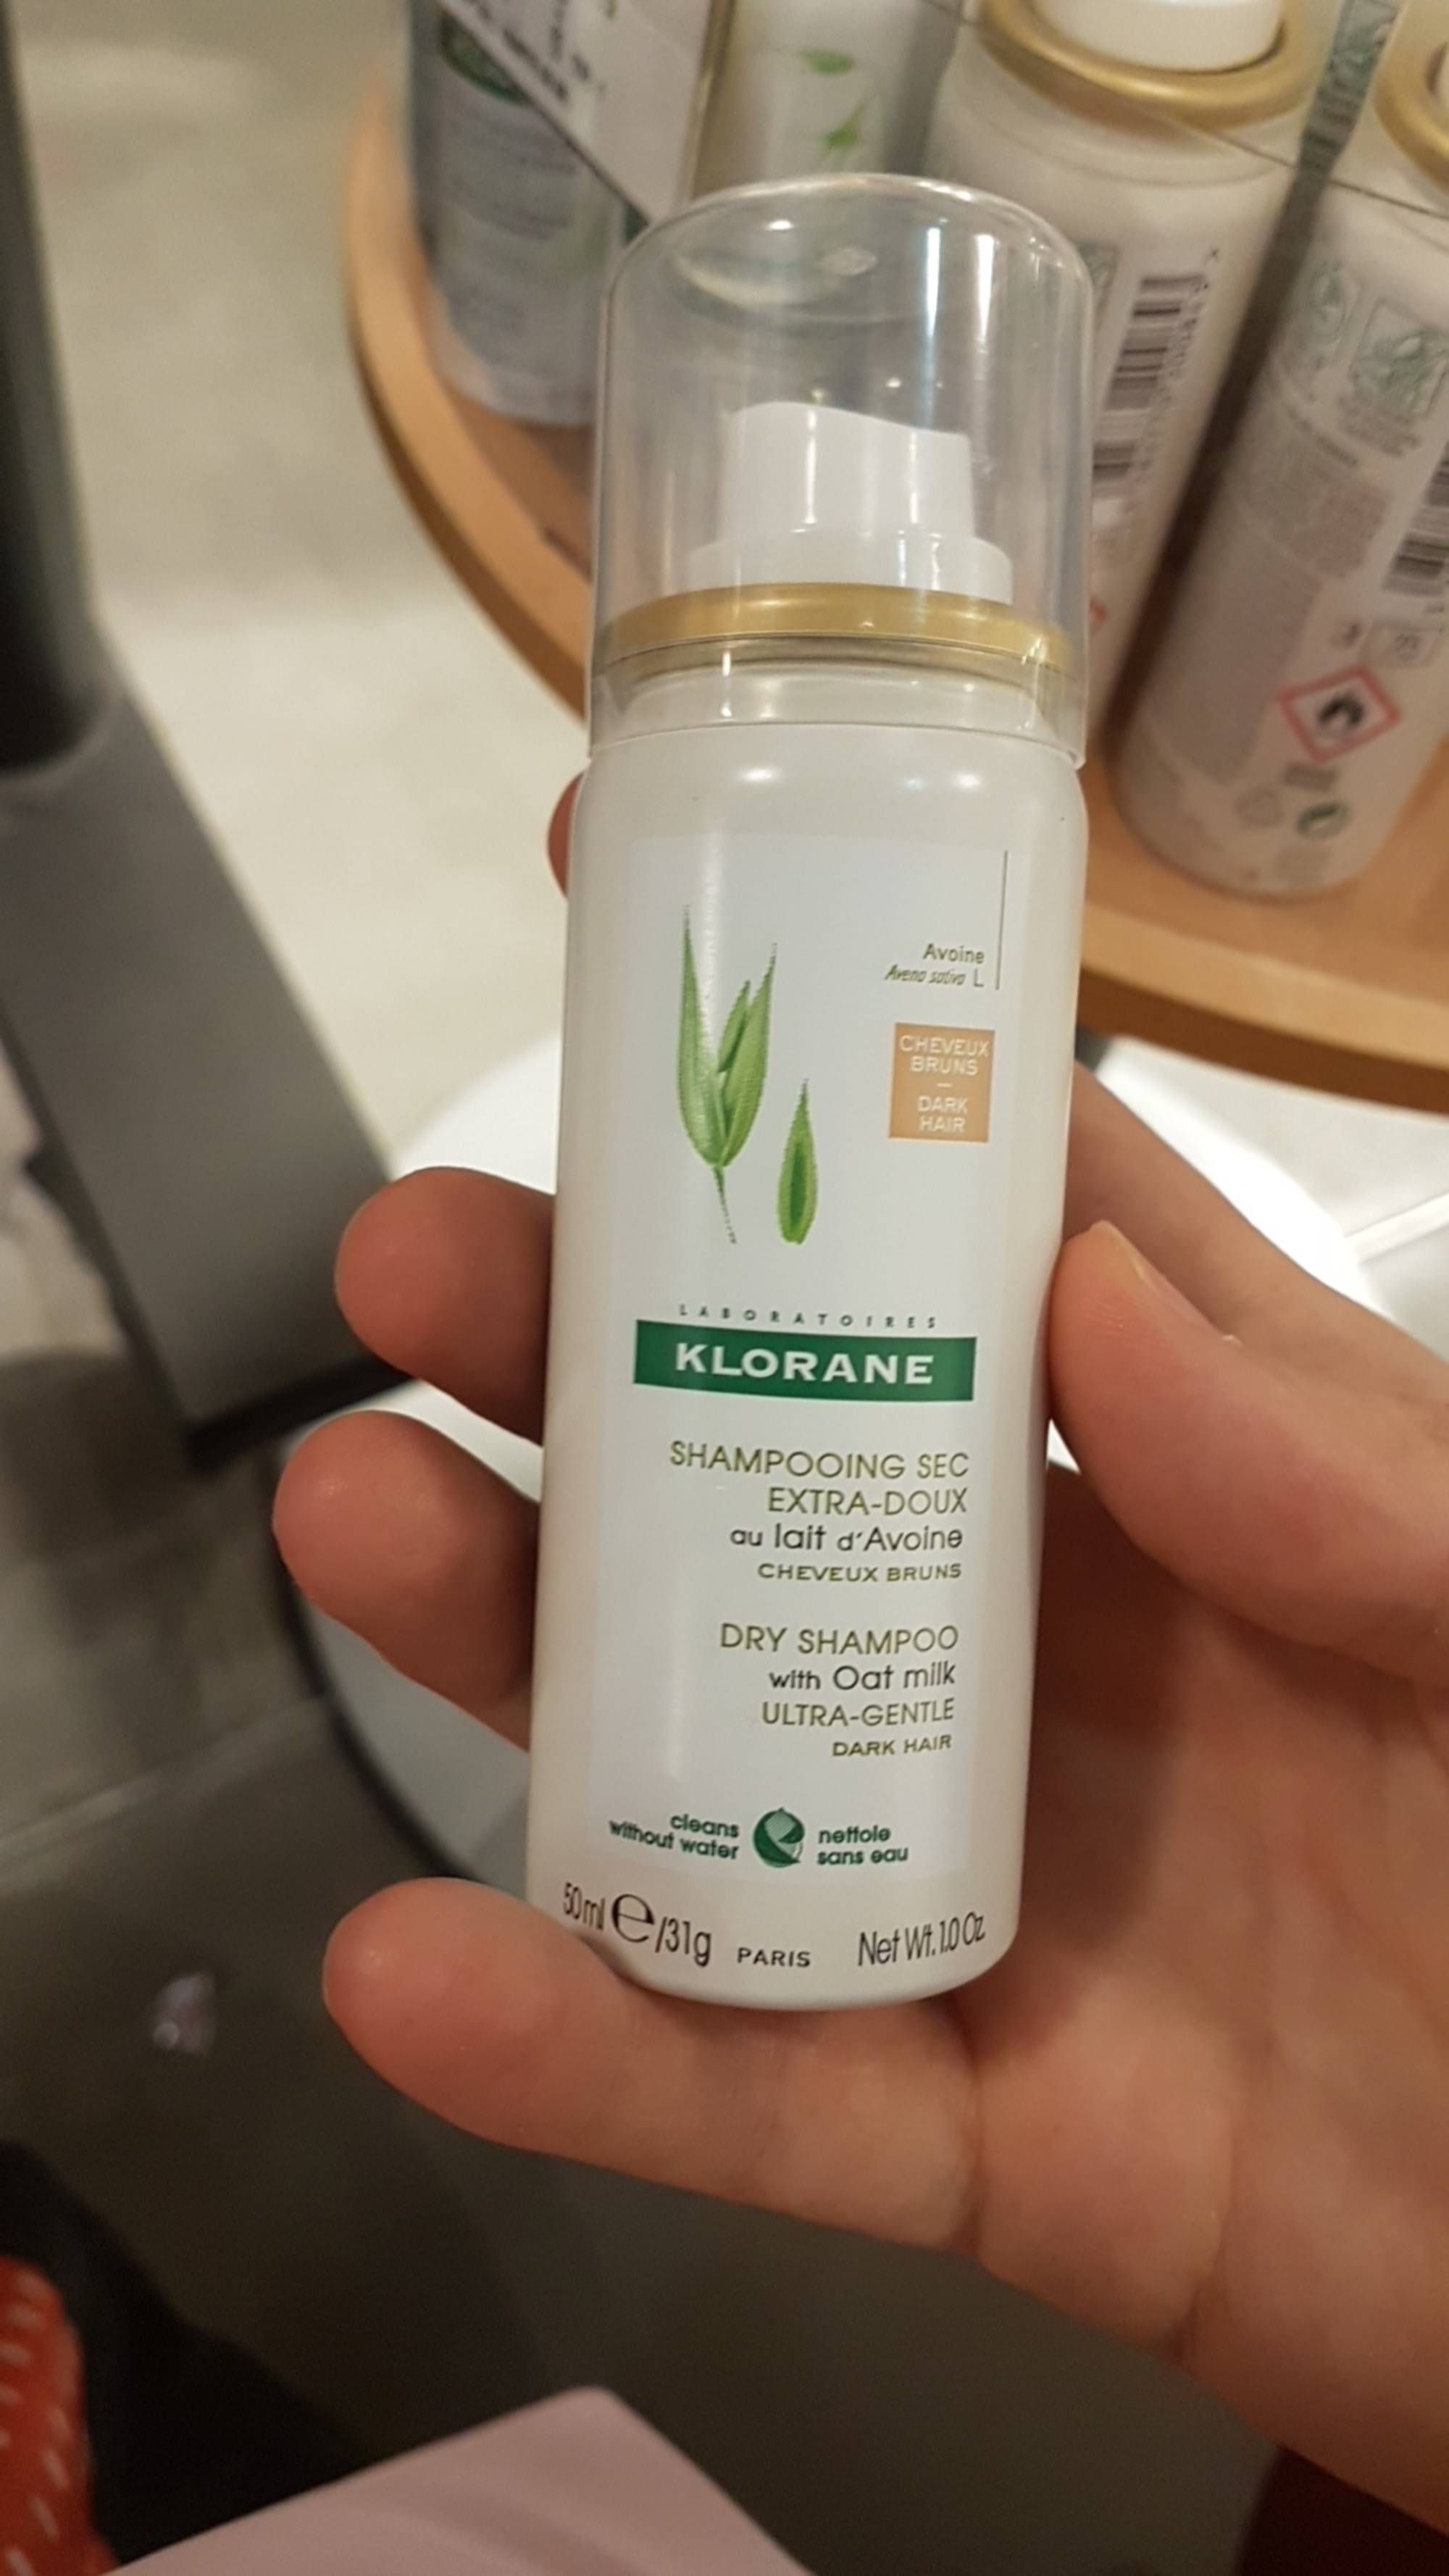 KLORANE - Shampooing sec extra-doux au lait d'avoine